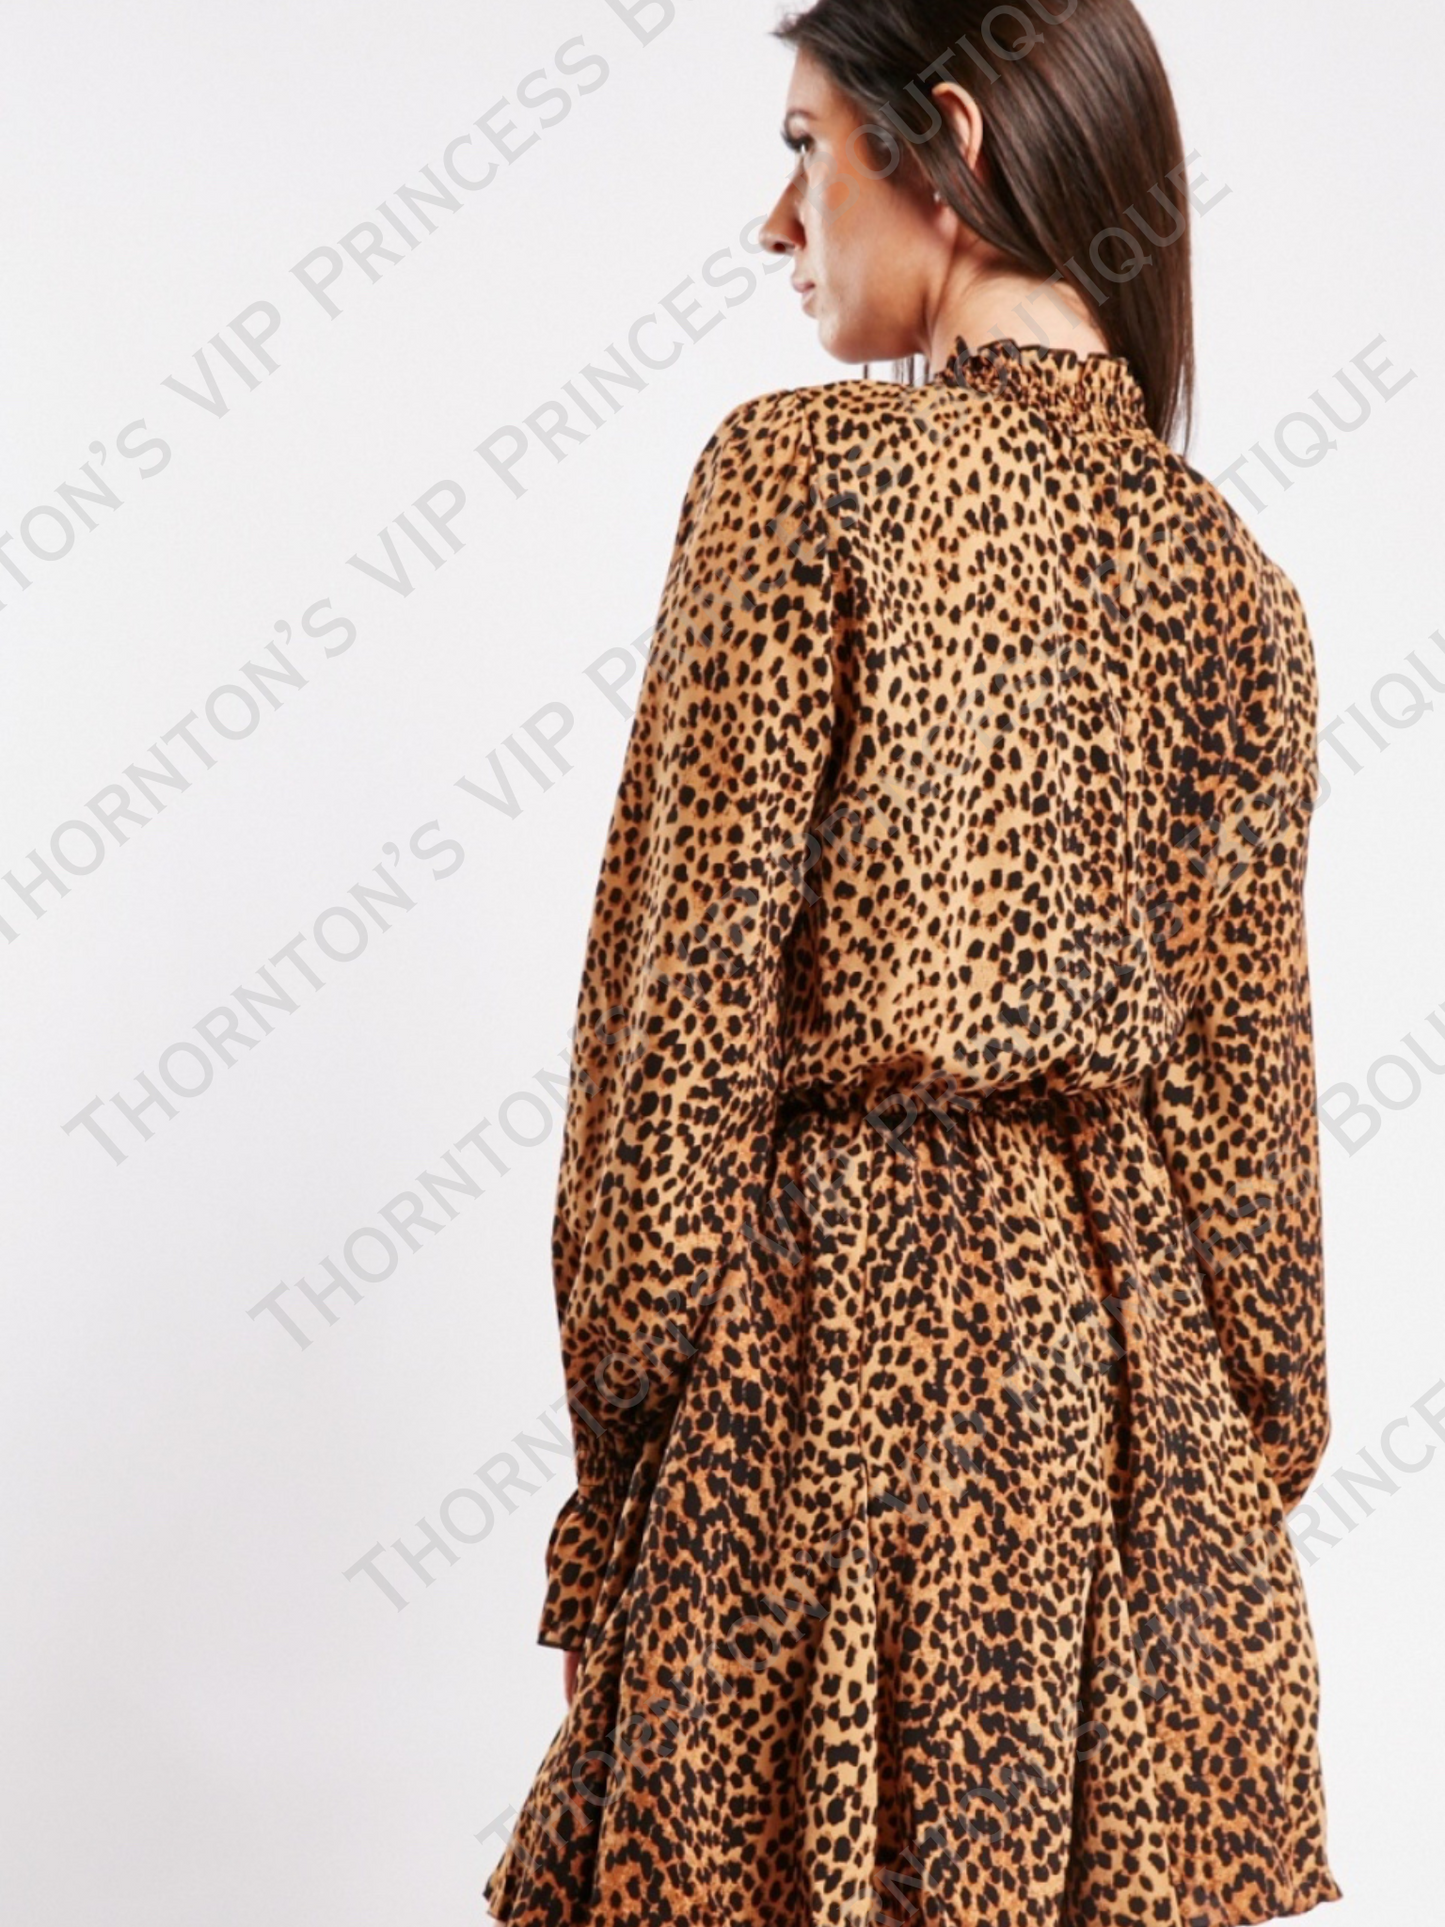 AXPARIS Leopard Print Mini Dress